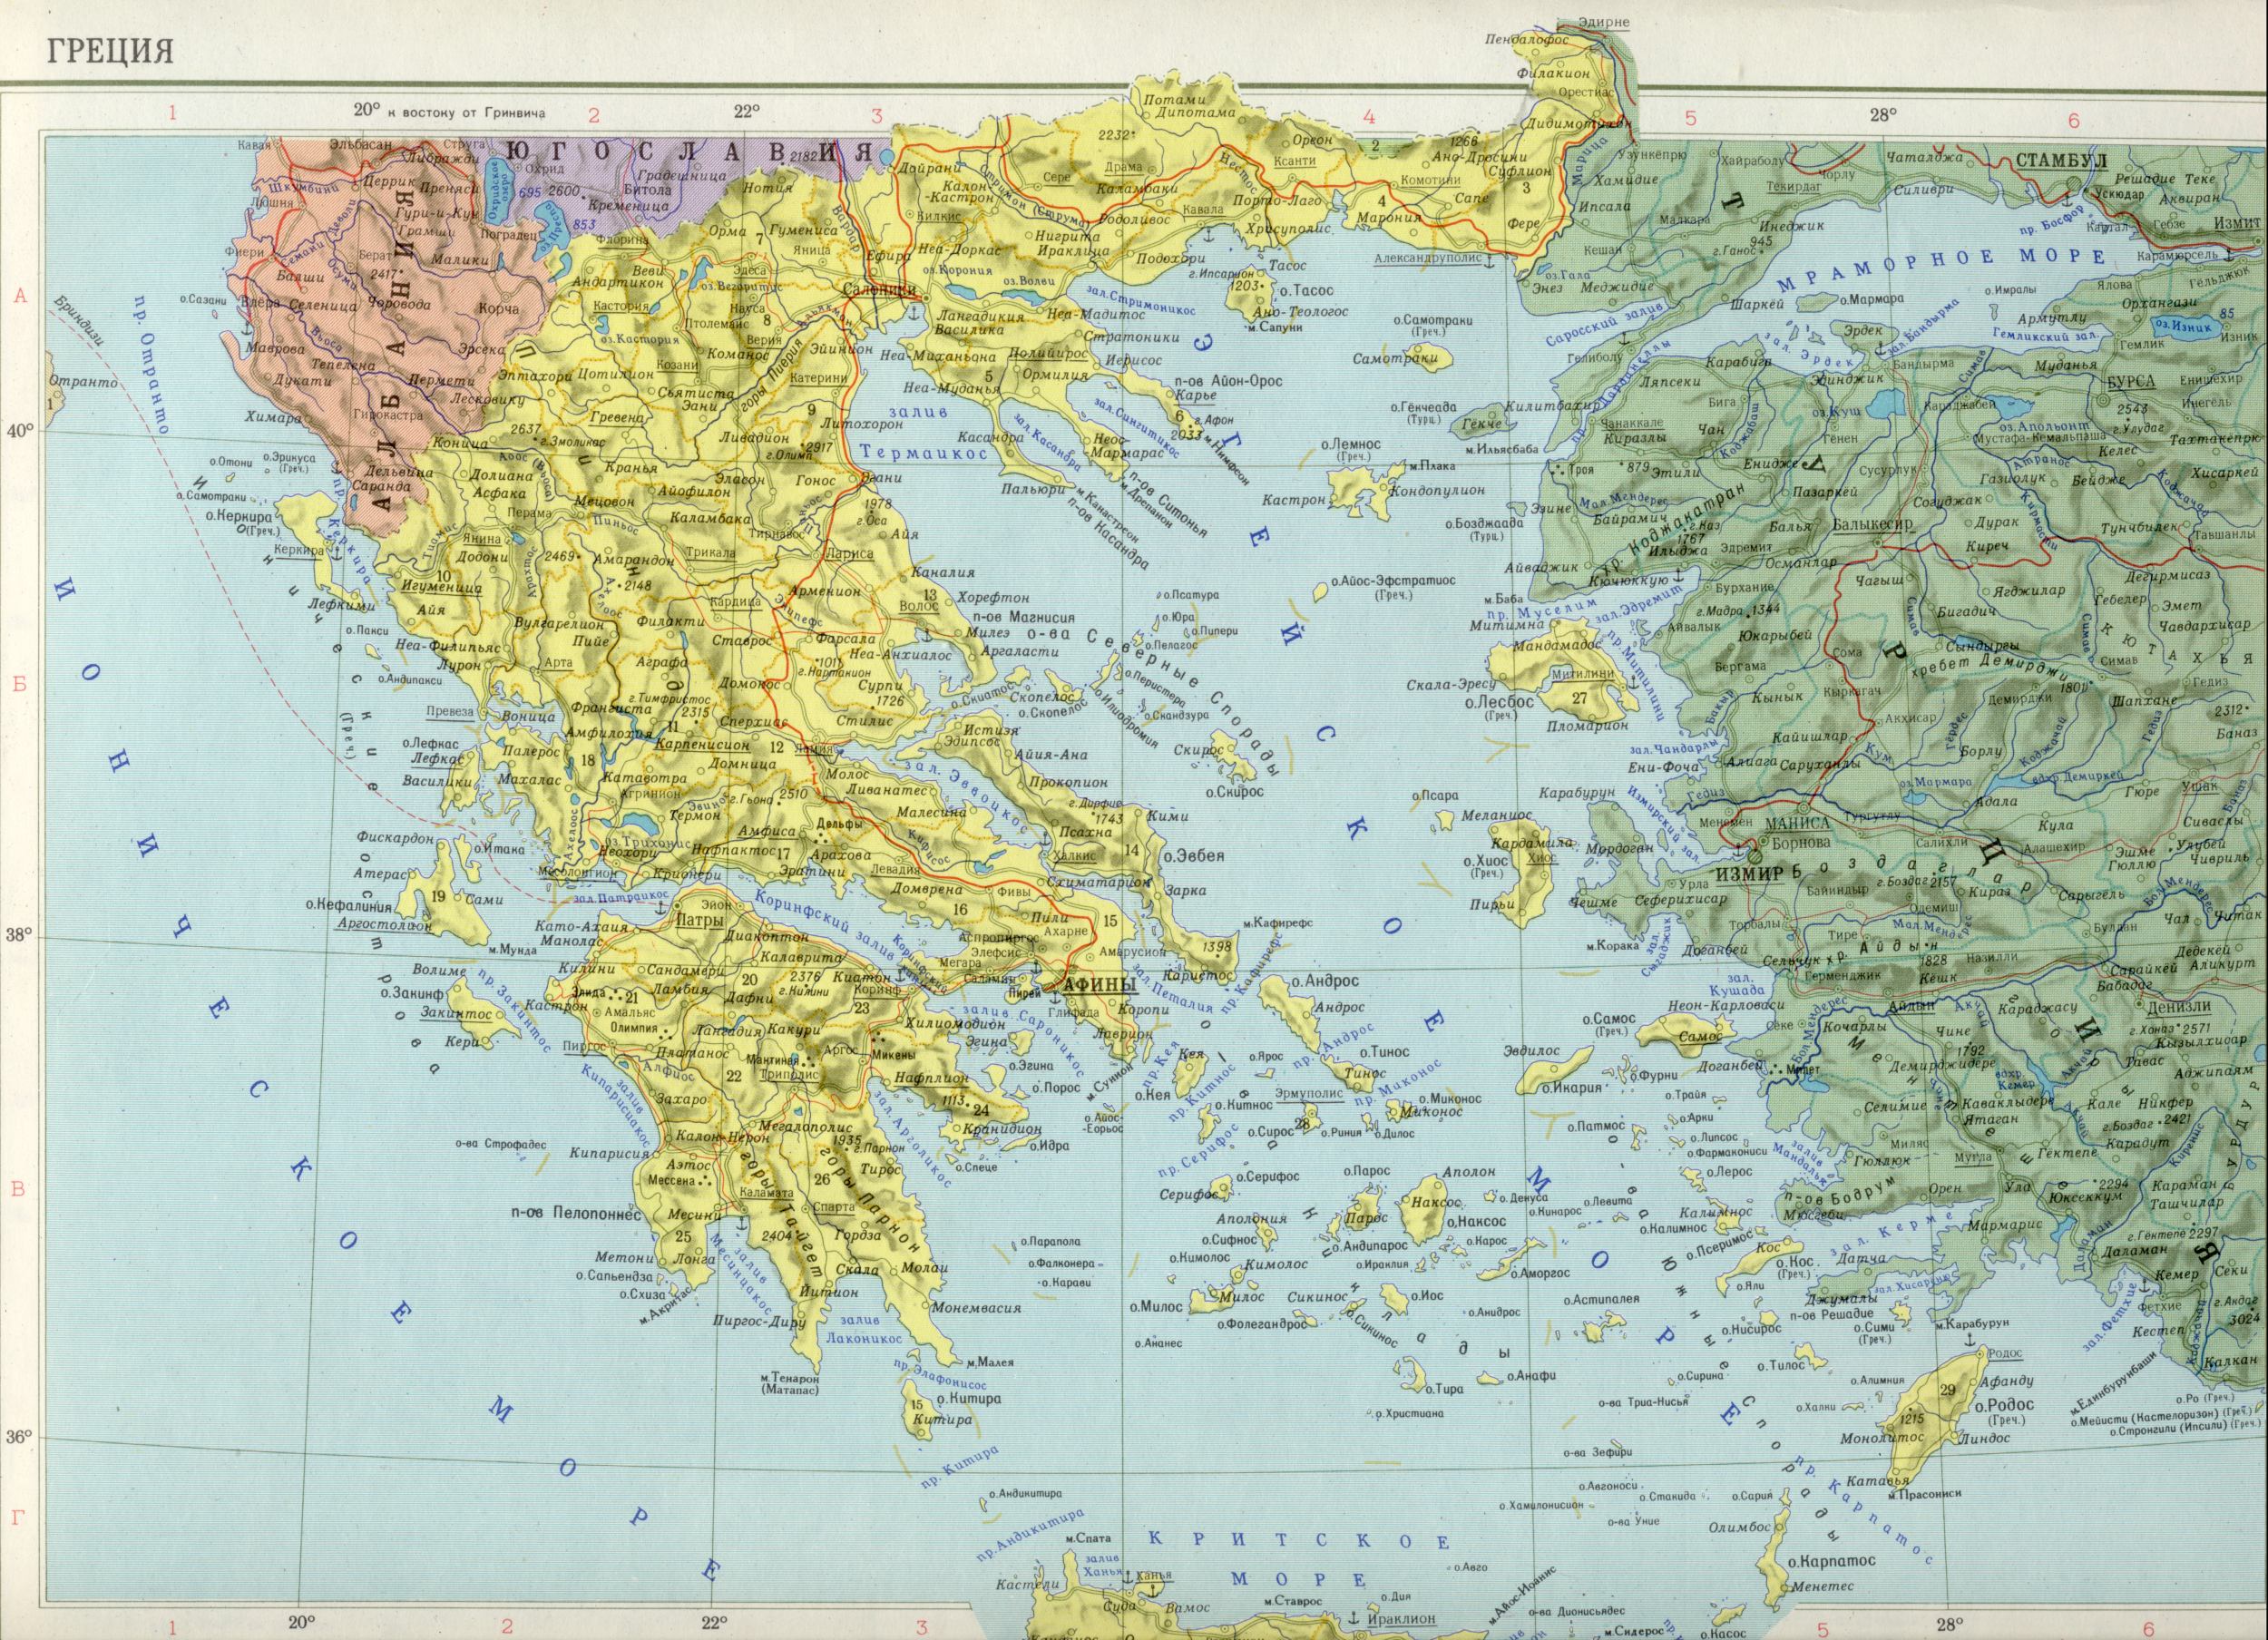 Греция - карта на русском языке. Подробная политическая карта Греции , A0 - 